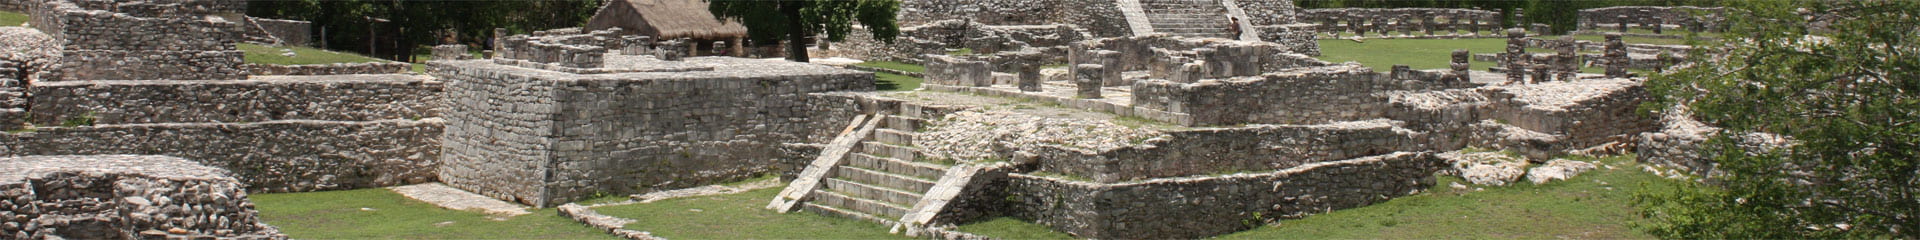 The main plaza of the pyramid of Mayapan, Yucatan, Mexico